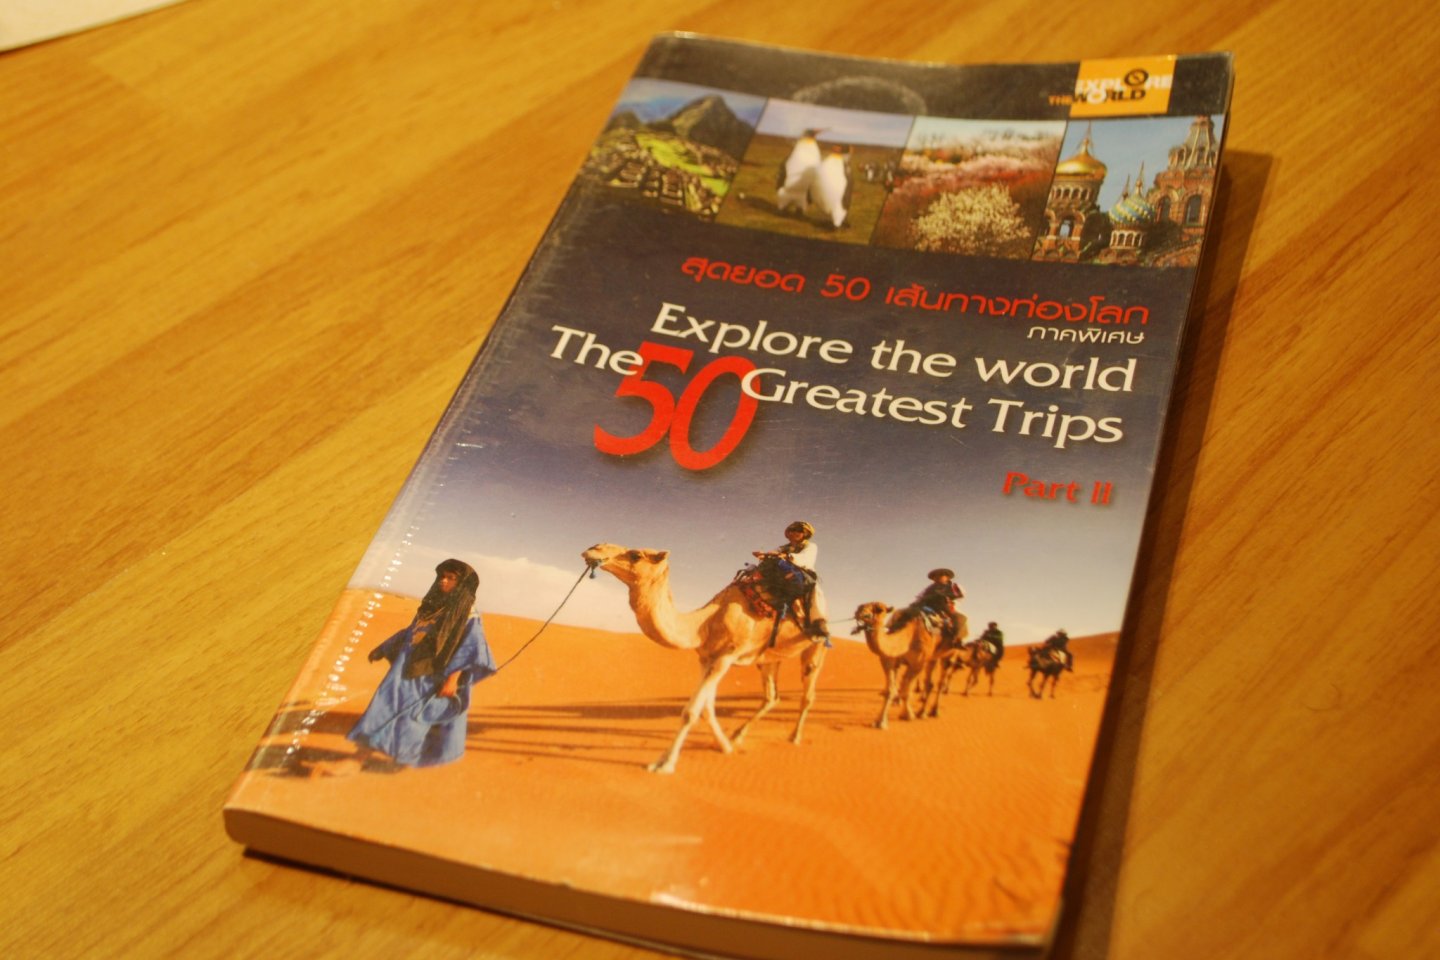 “หนังสือสุดยอด 50 เส้นทางท่องโลกภาคพิเศษ” เพื่อนเดินทางที่พาฉันไปพบกับเส้นทางสวยๆทั่วโลก